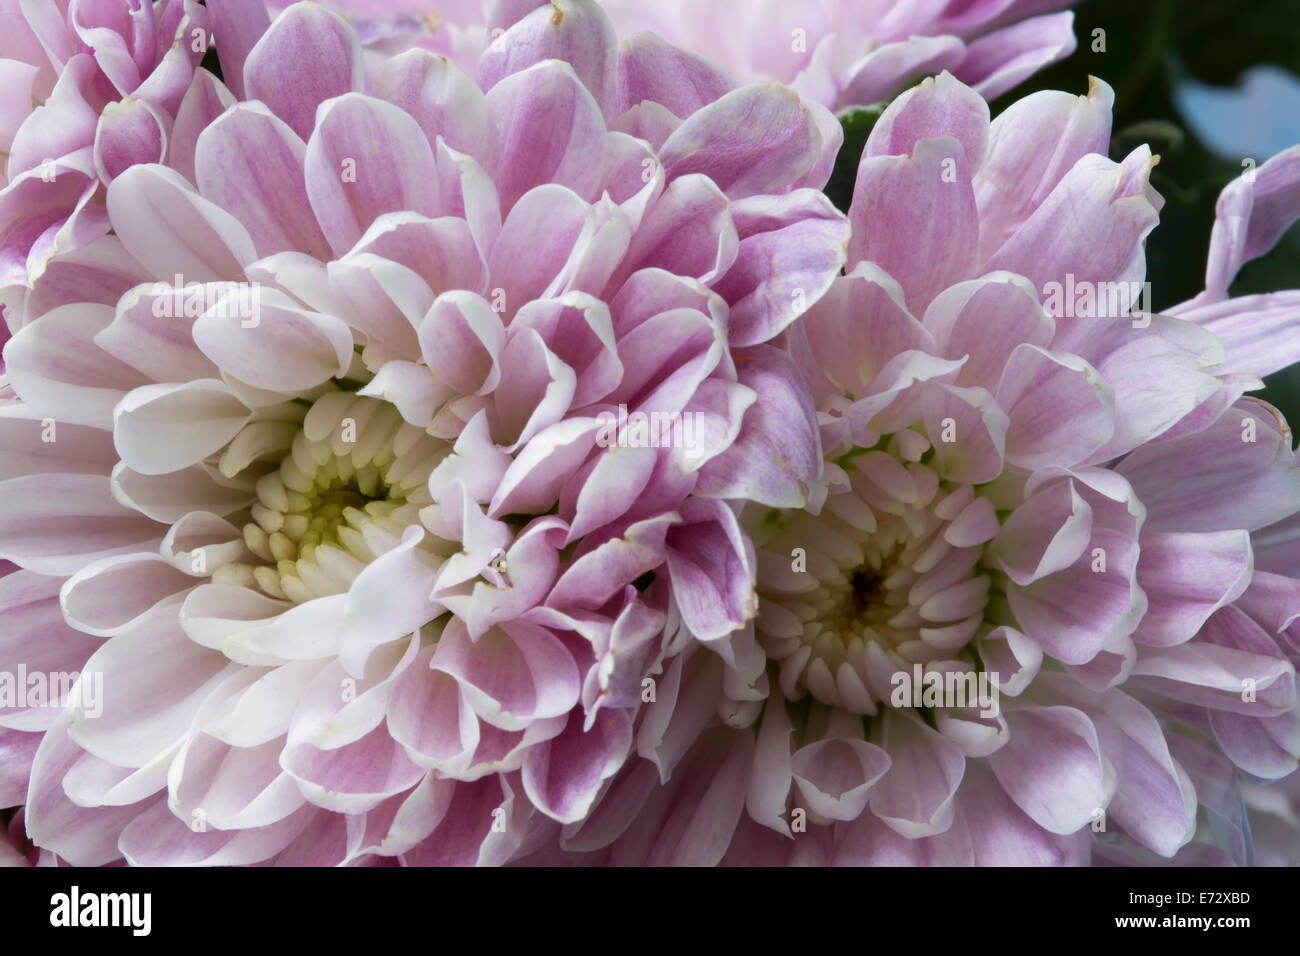 Dettaglio di close-up di alcuni piuttosto pallido viola le mamme. Foto Stock